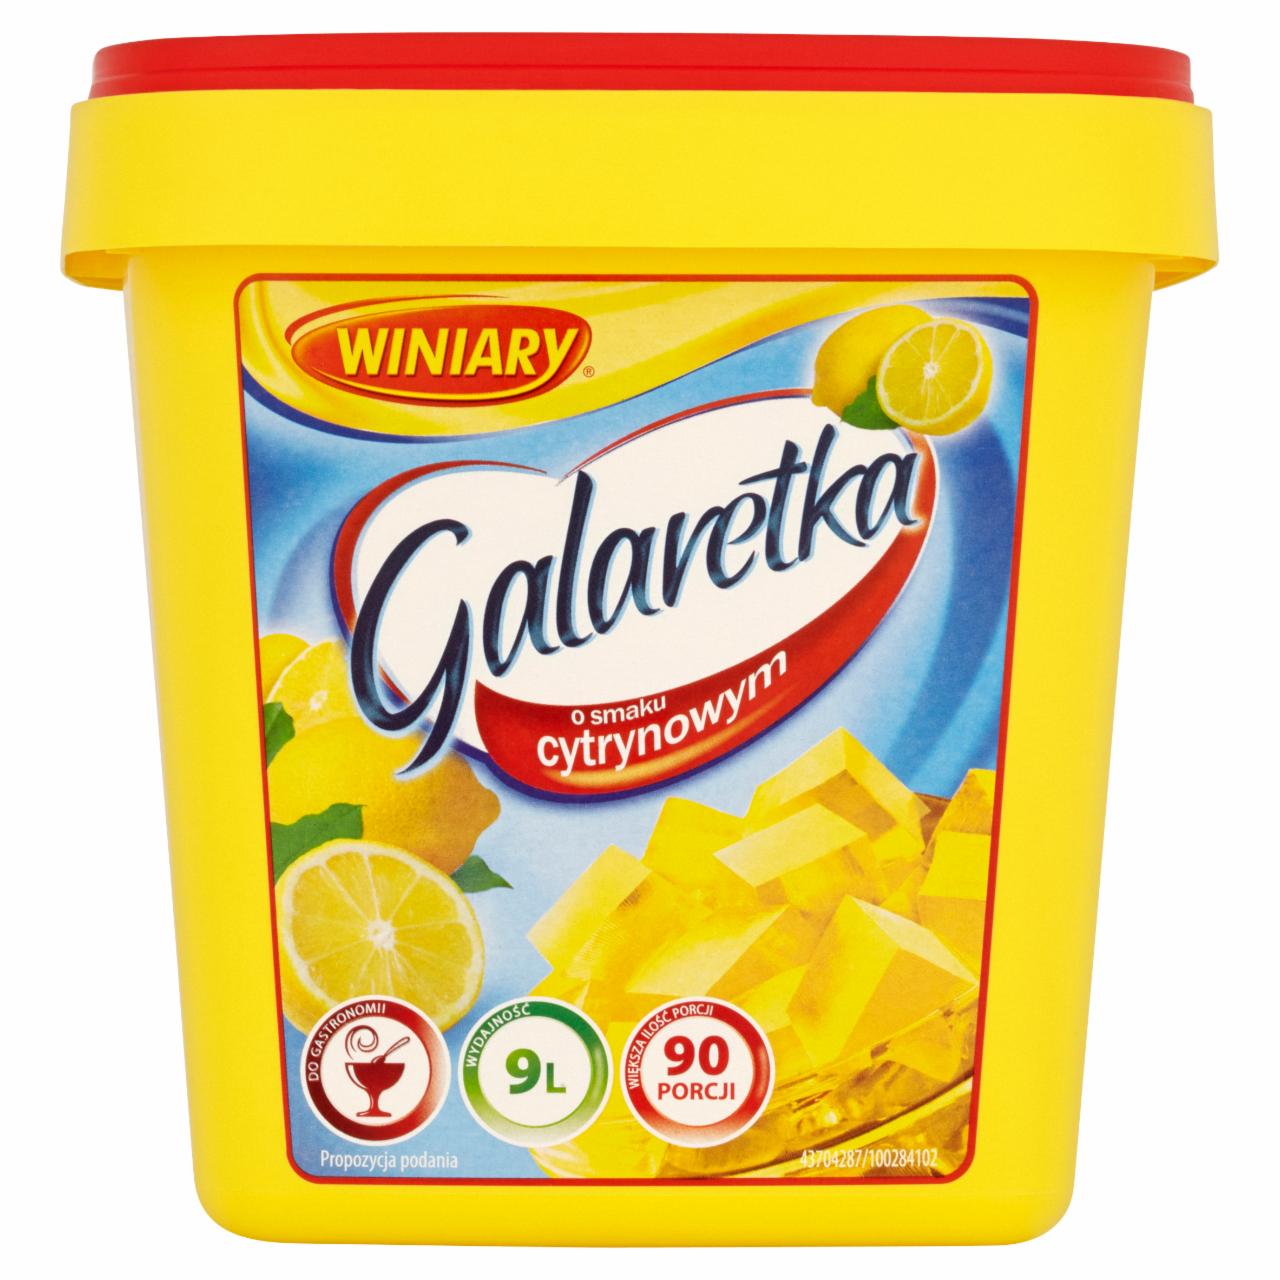 Zdjęcia - Winiary Galaretka o smaku cytrynowym 1,3 kg